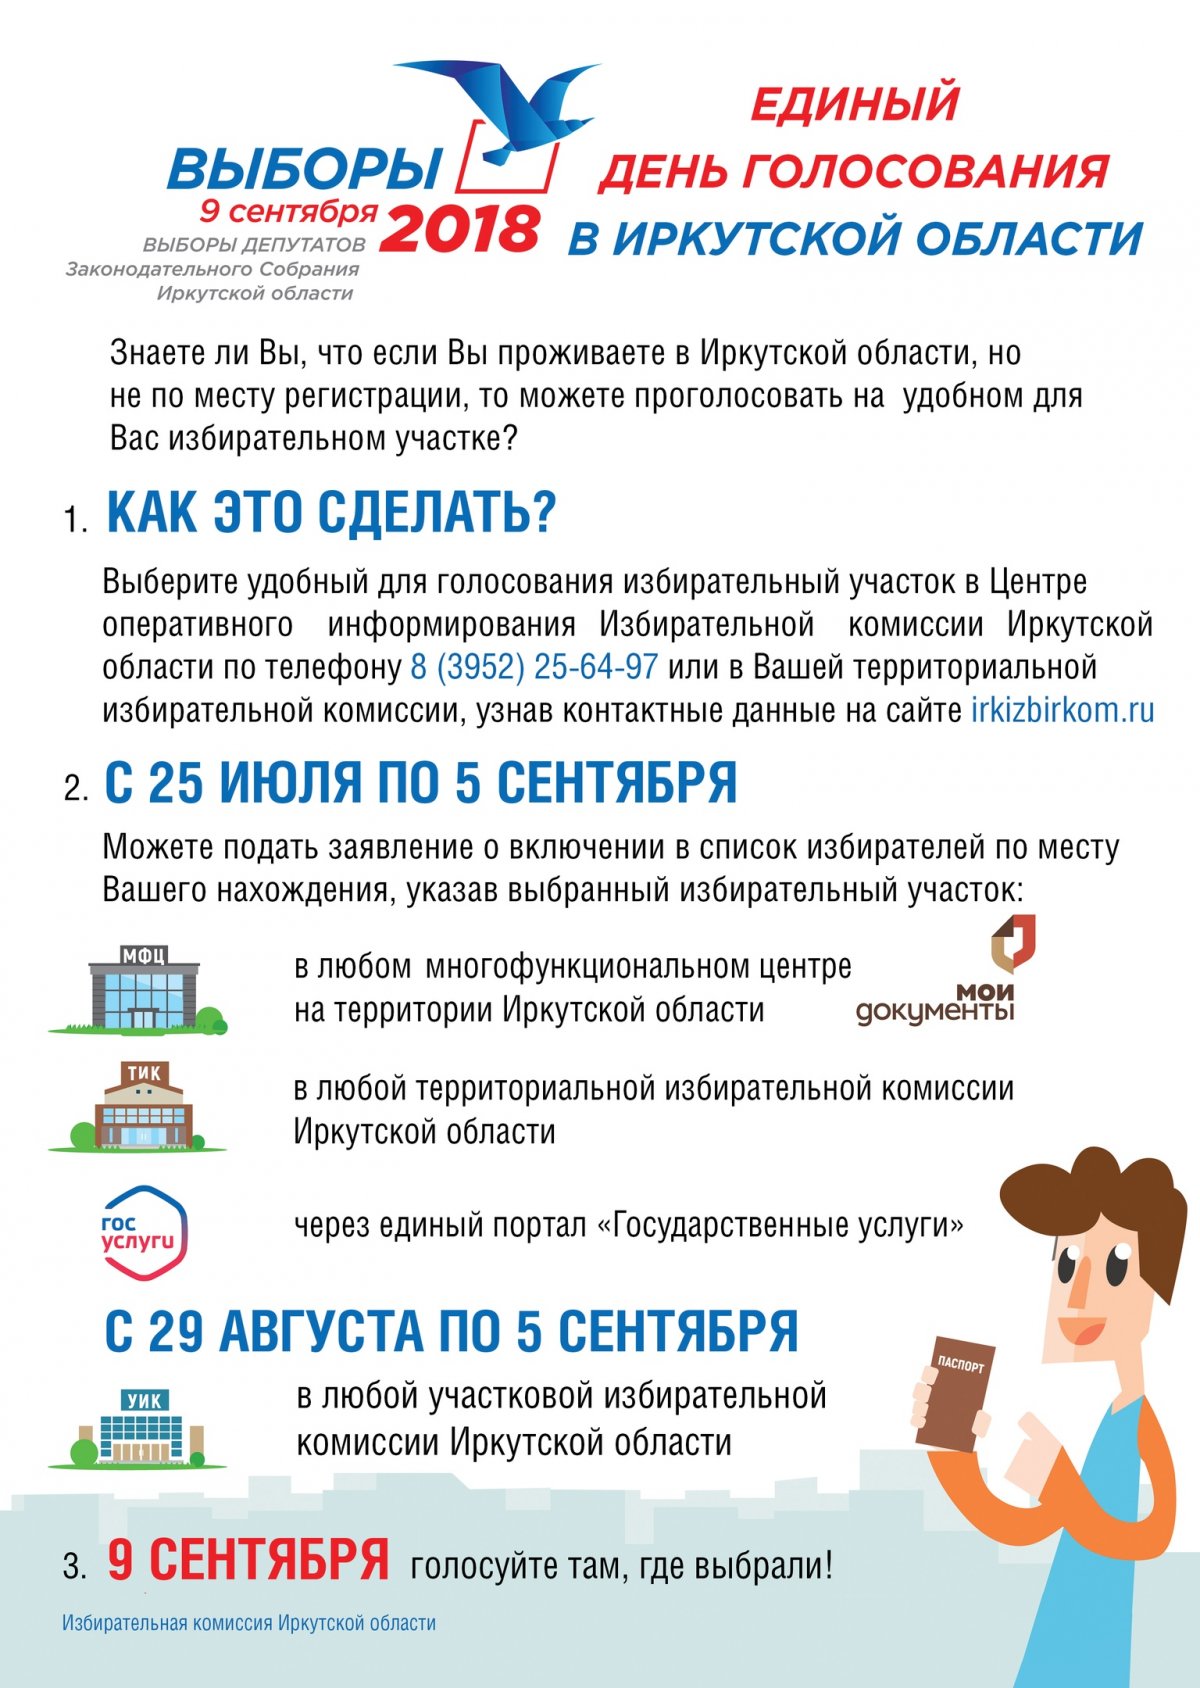 Выборы депутатов Законодательного собрания Иркутской области состоятся в единый день голосования 9 сентября 2018 года.